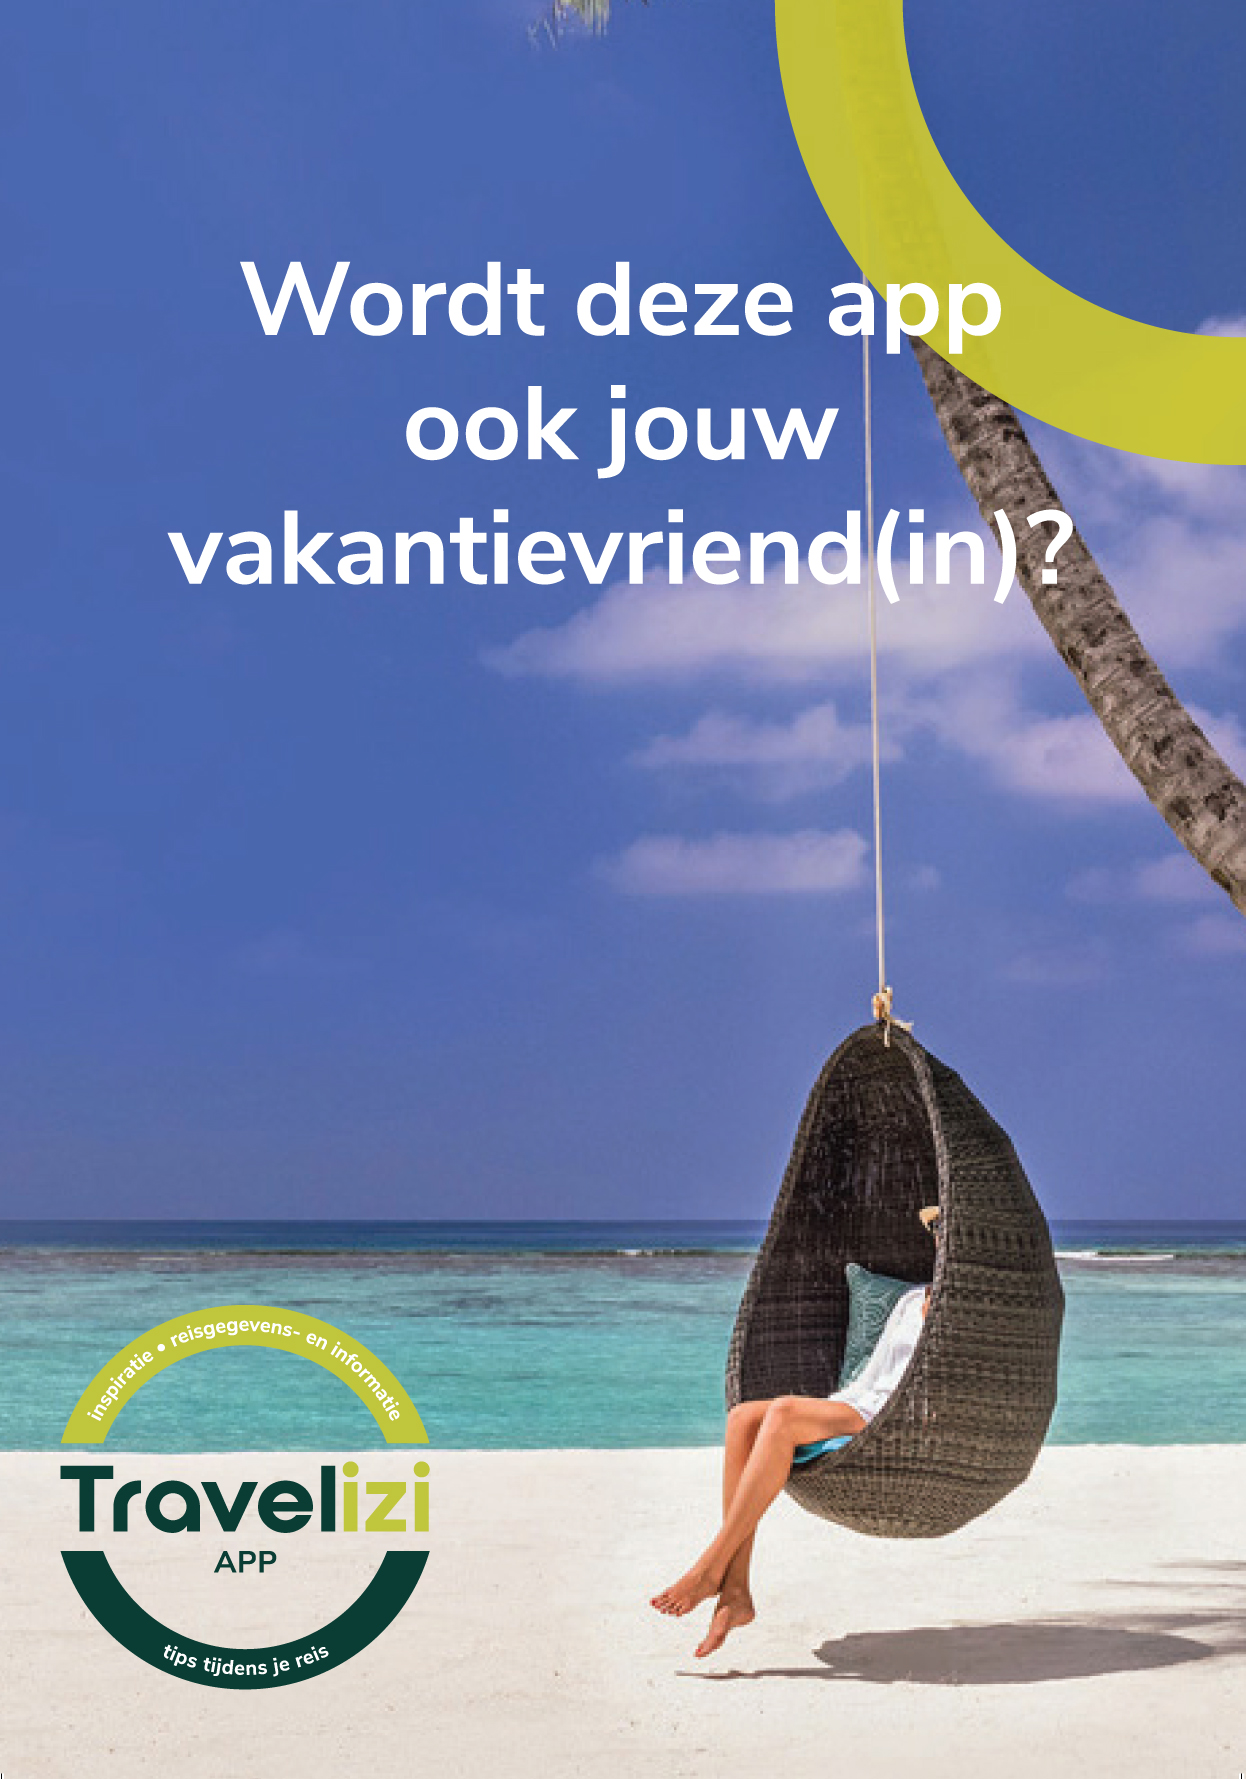 Travelizi flyer app voorkant